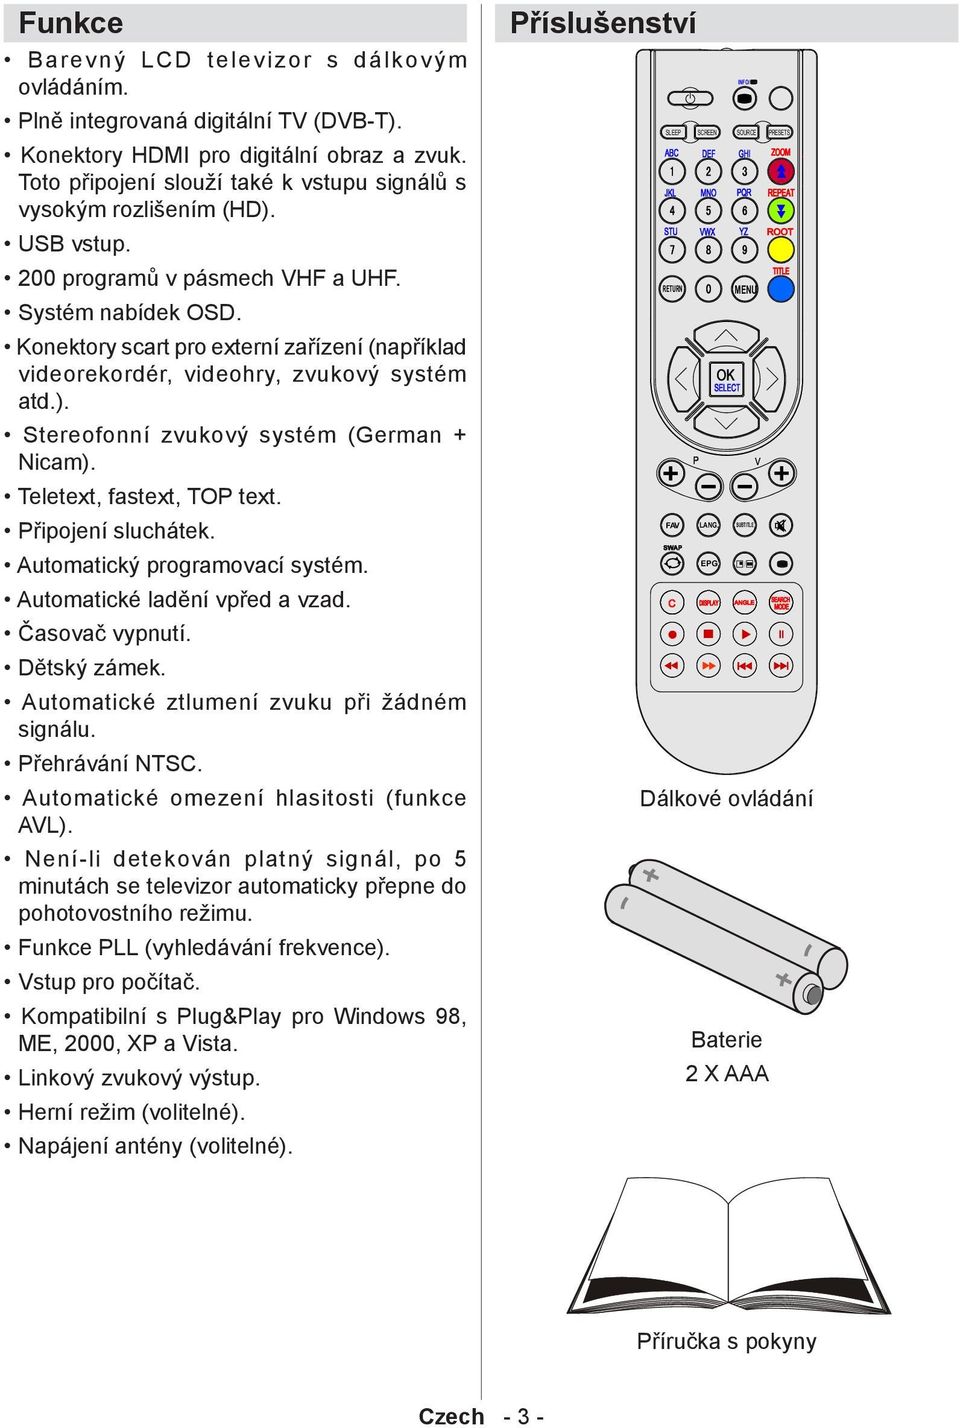 Konektory scart pro externí zařízení (například videorekordér, videohry, zvukový systém atd.). Stereofonní zvukový systém (German + Nicam). Teletext, fastext, TOP text. Připojení sluchátek.